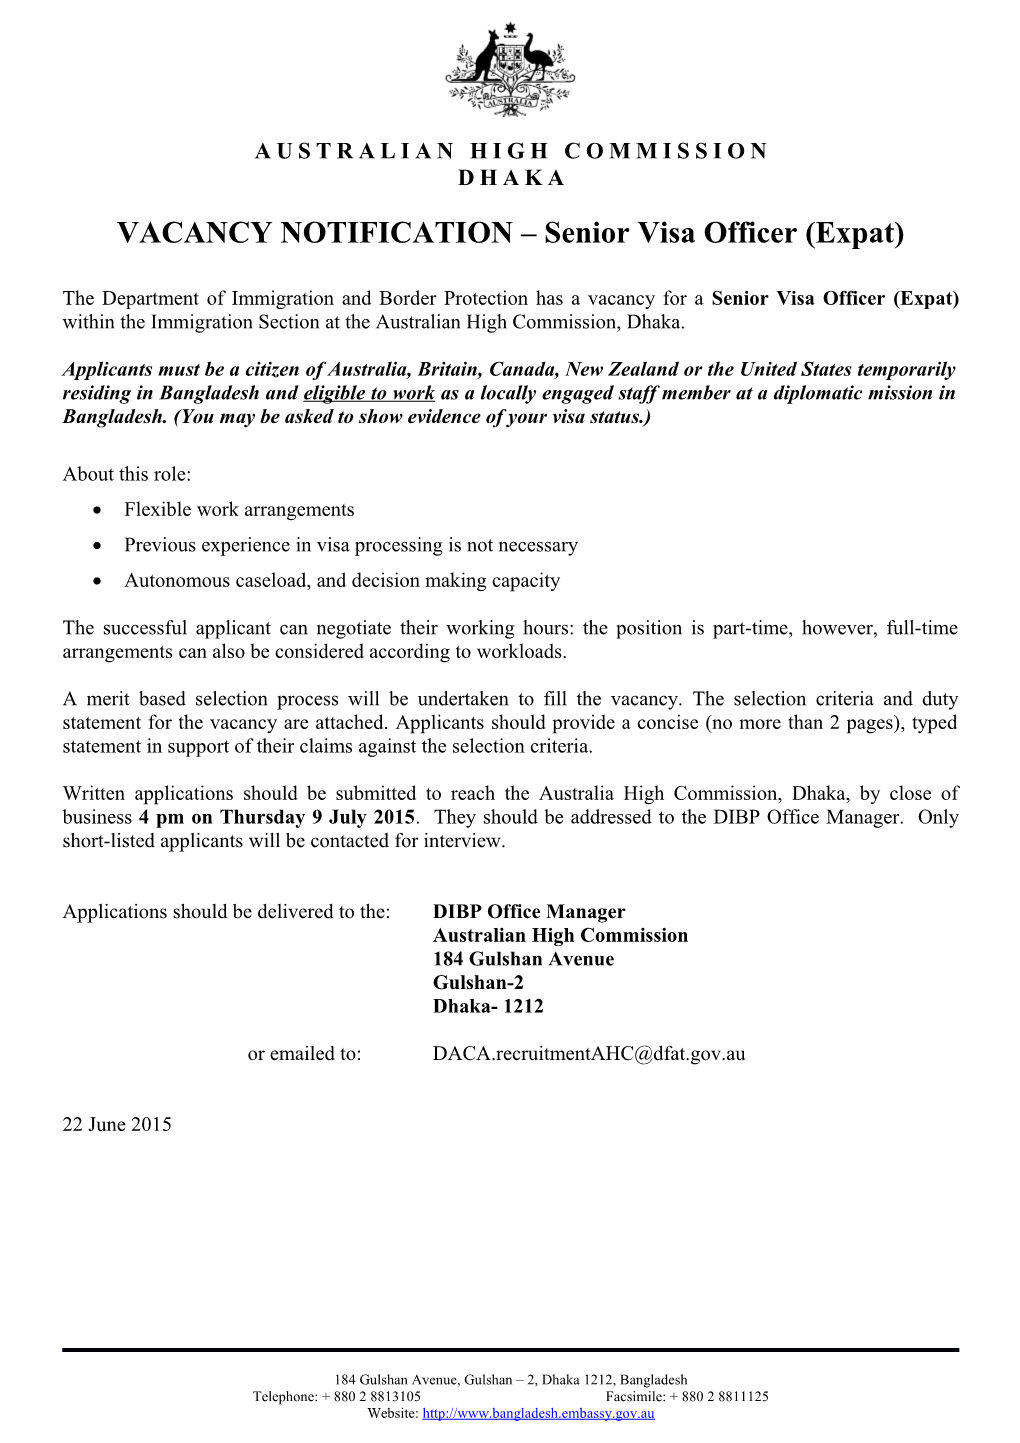 Senior Visa Officer, New Delhi - Expatriate Position